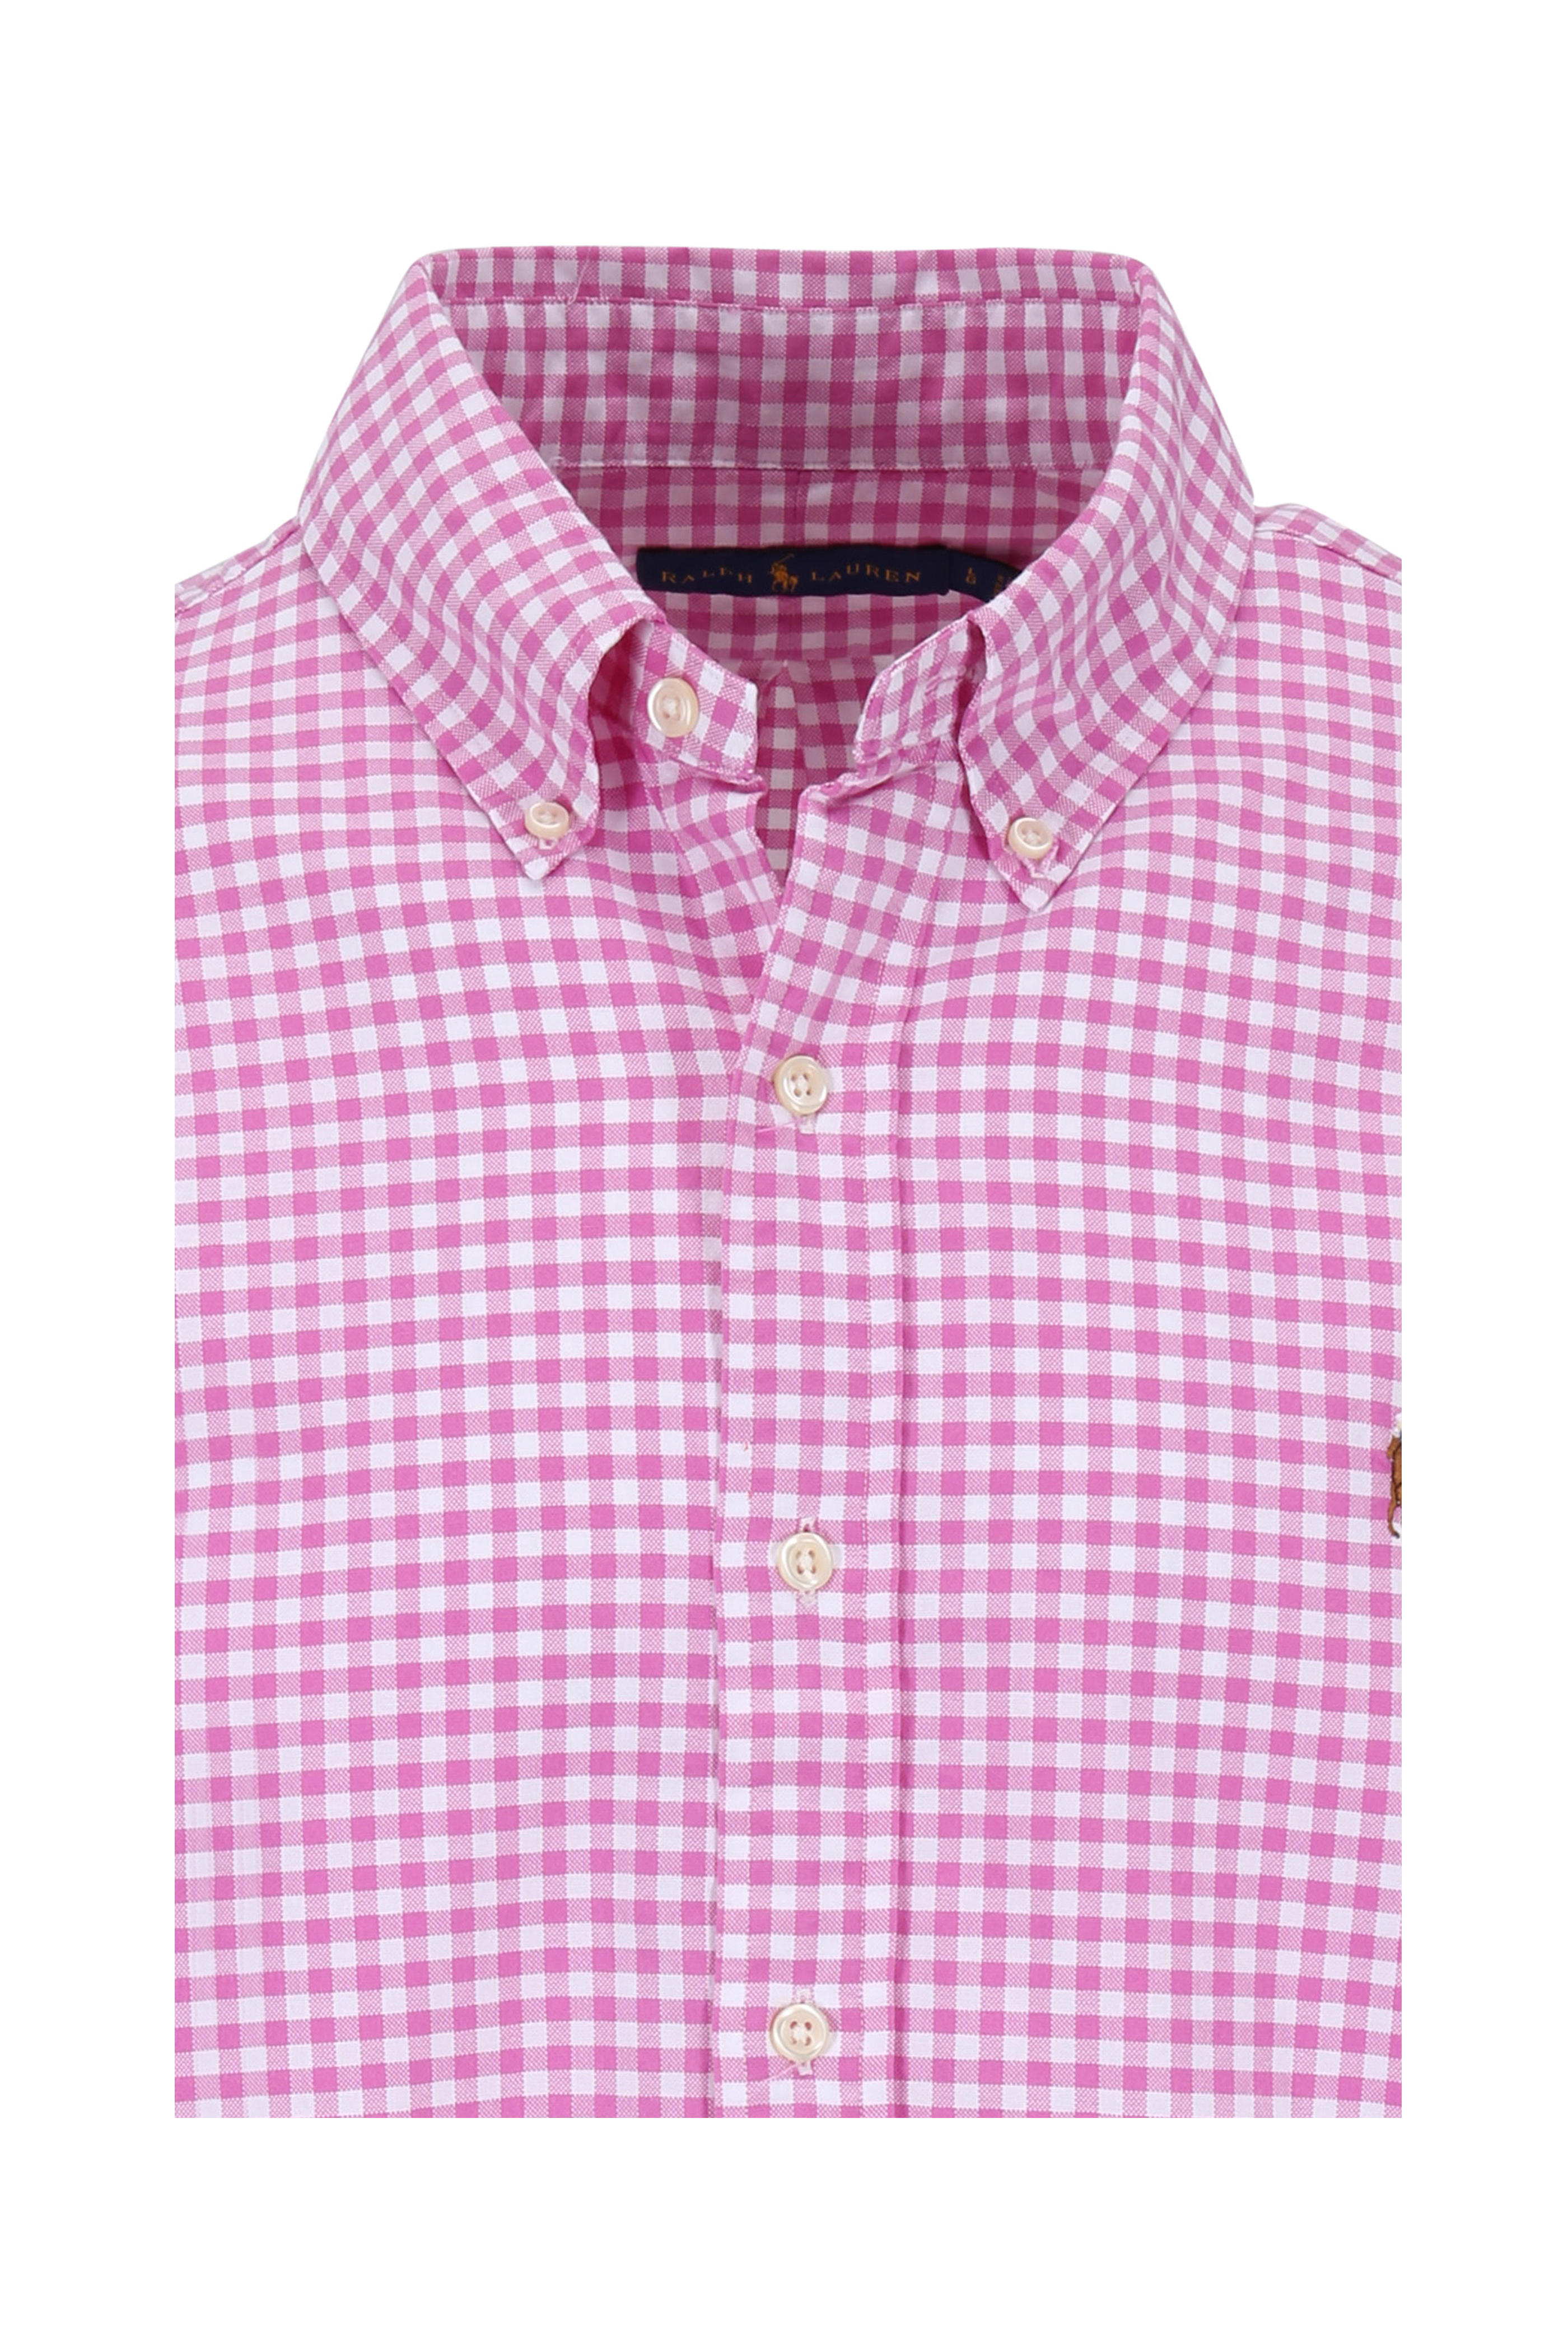 ralph lauren pink checkered shirt